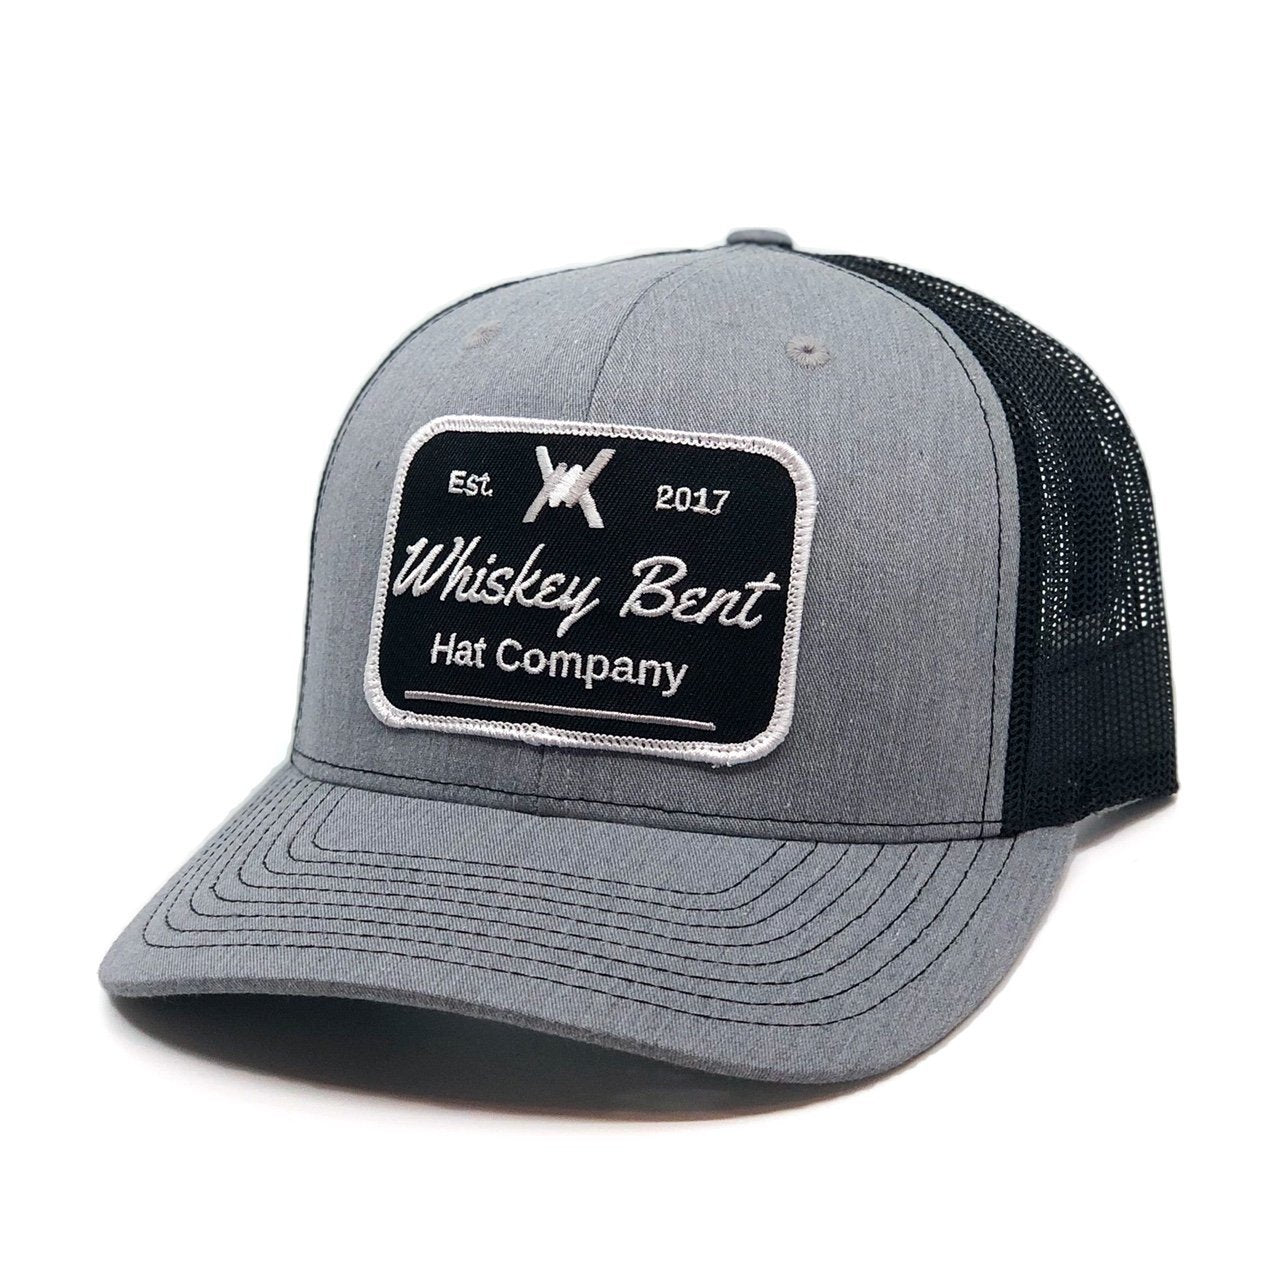 Whiskey Bent Men's Cheyenne Black Snapback Hat WB02-BK